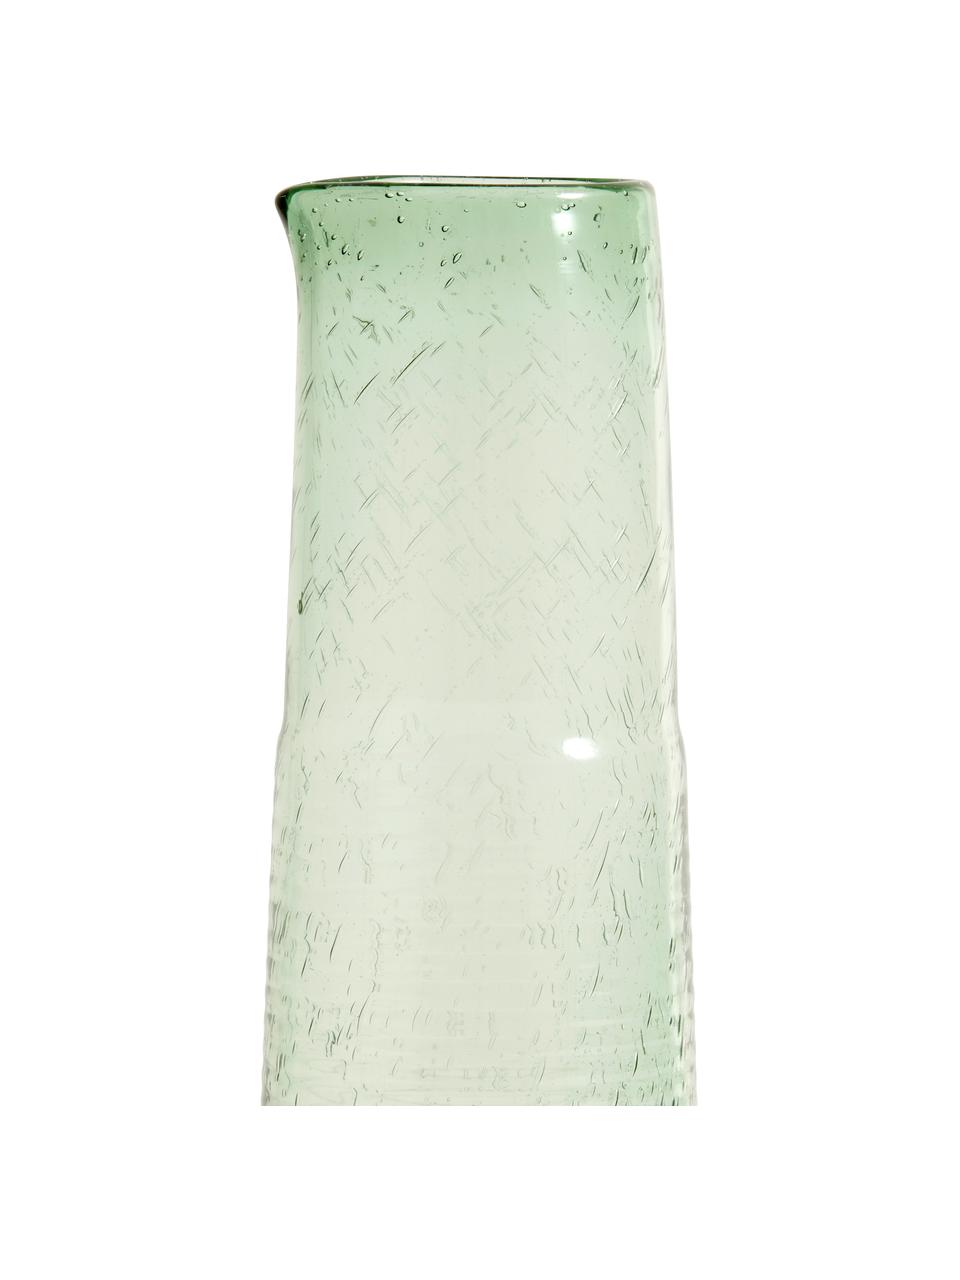 Mondgeblazen glazen karaf Greenie in groen, 1.3 L, Gerecycled glas, Groen, Ø 8 x H 30 cm, 1.3 L